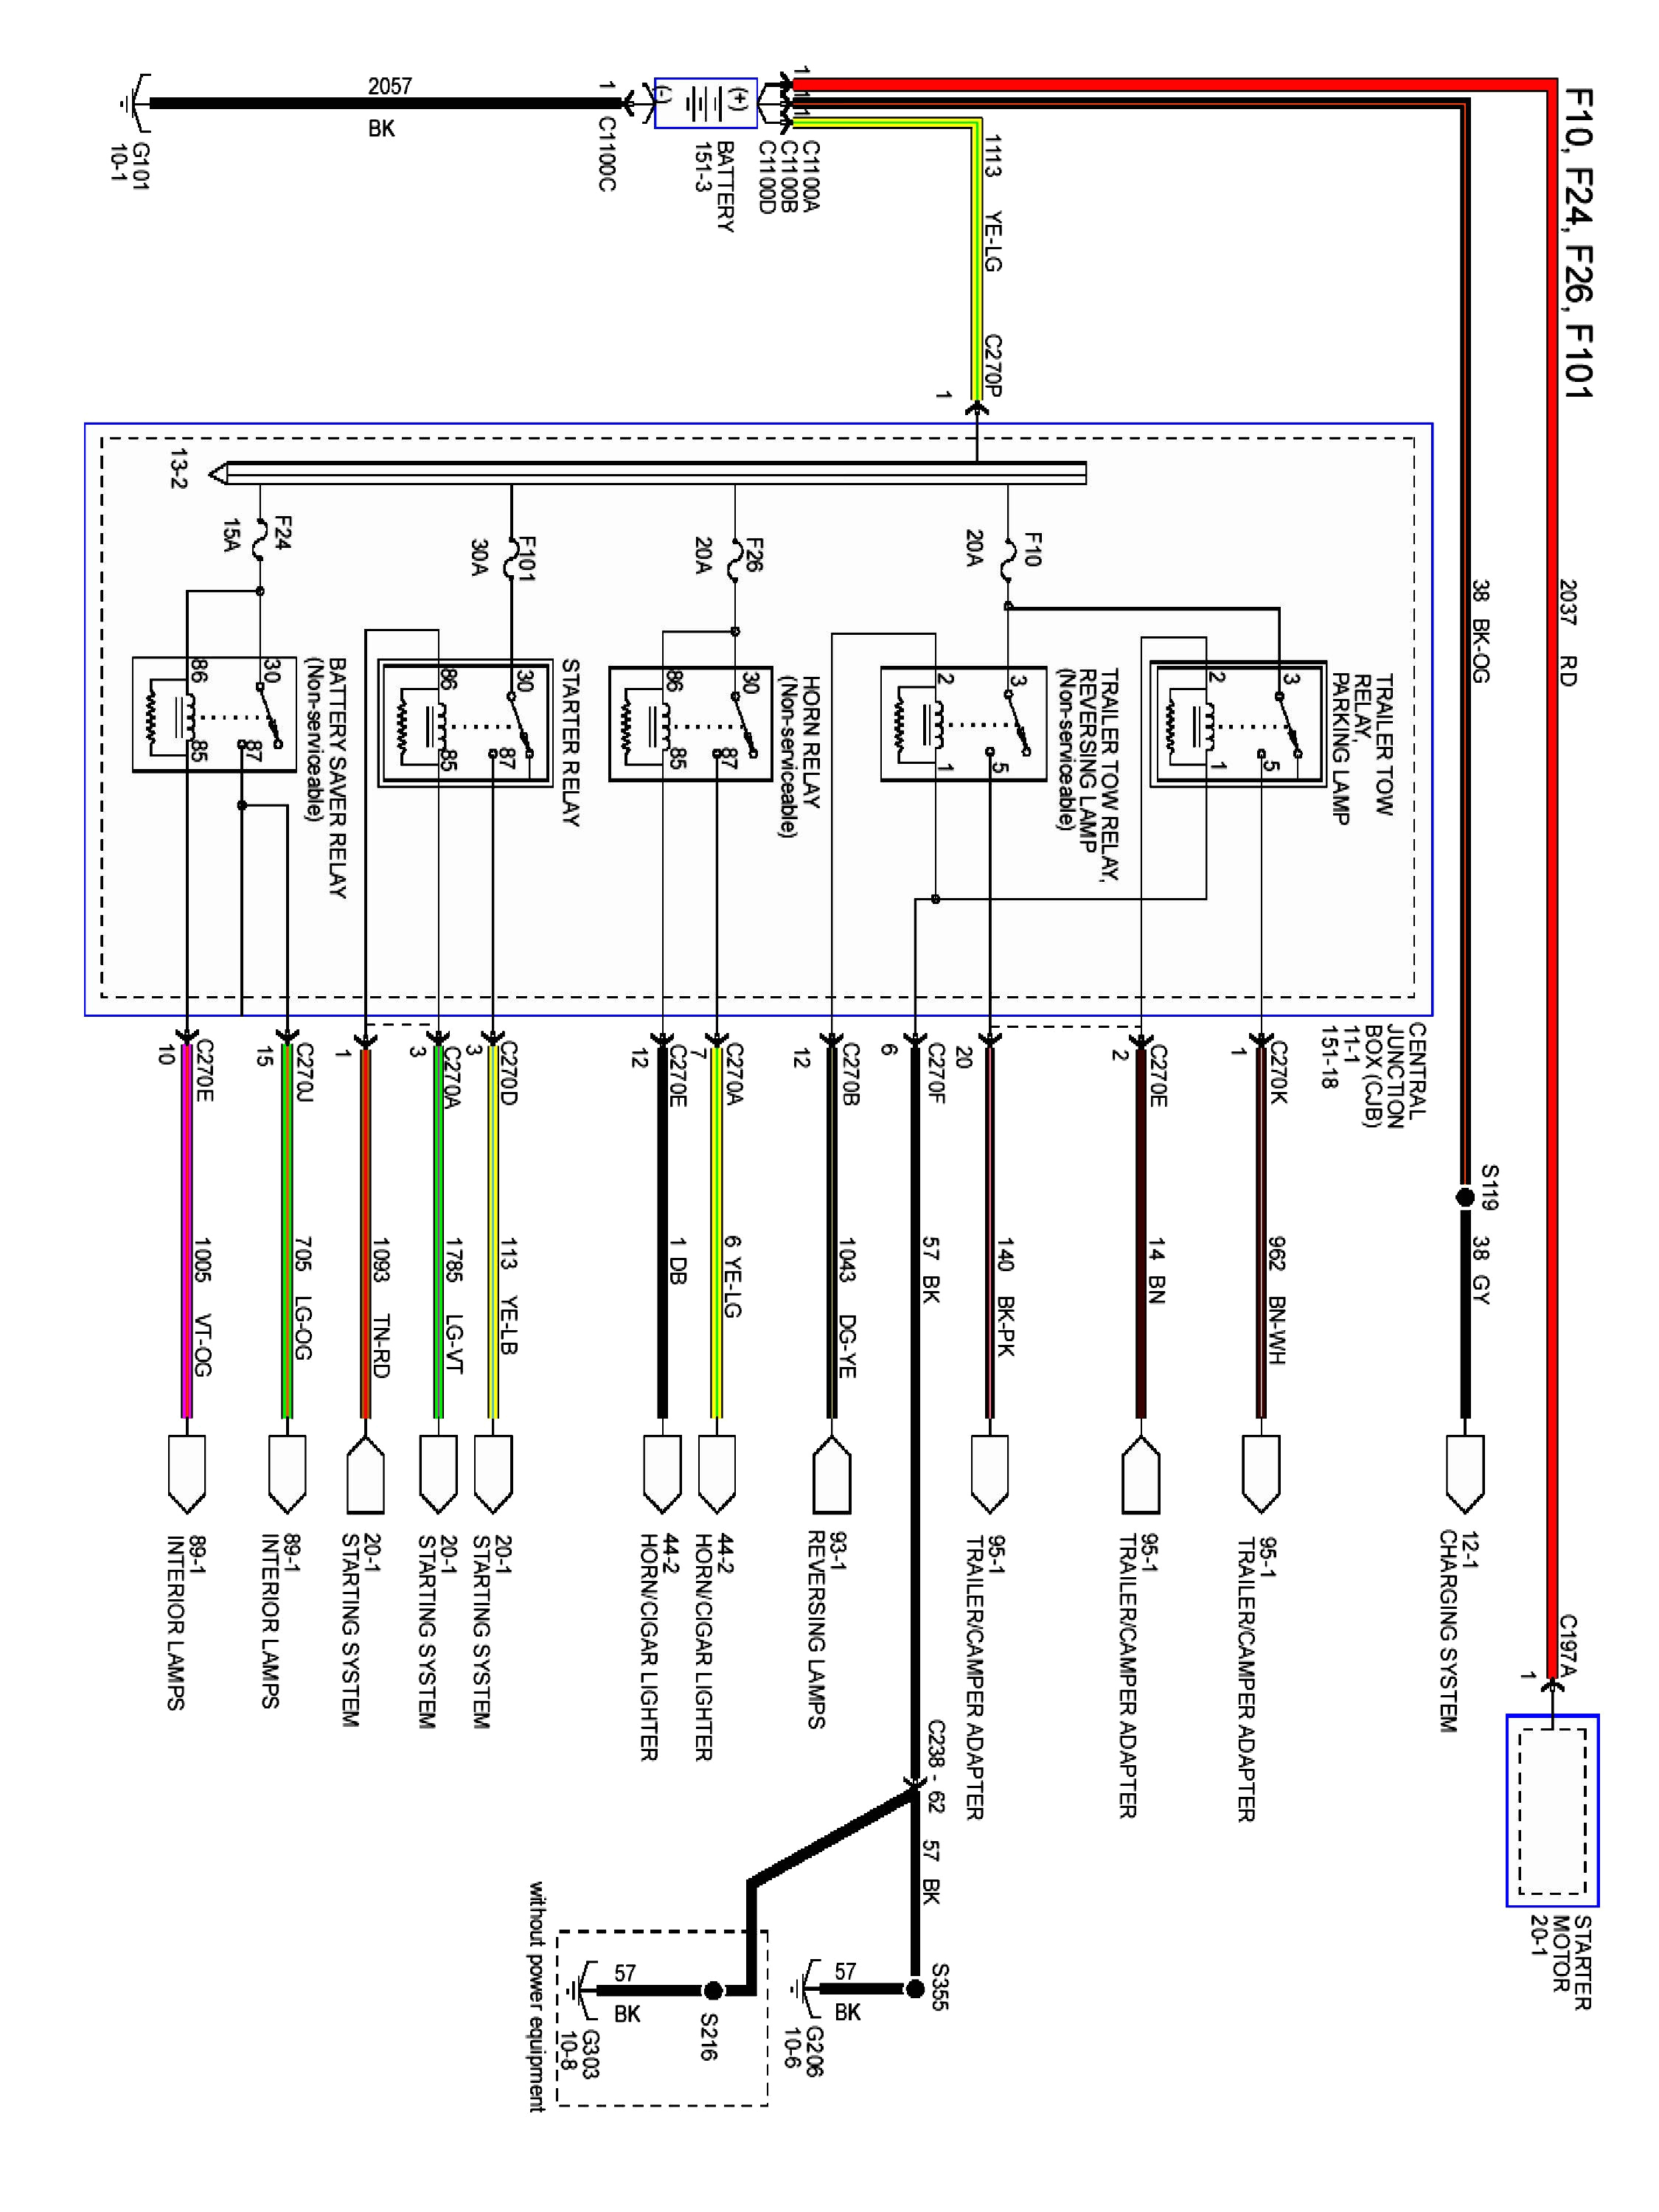 centralux wiring diagram schema wiring diagram ach wiring diagram model 8